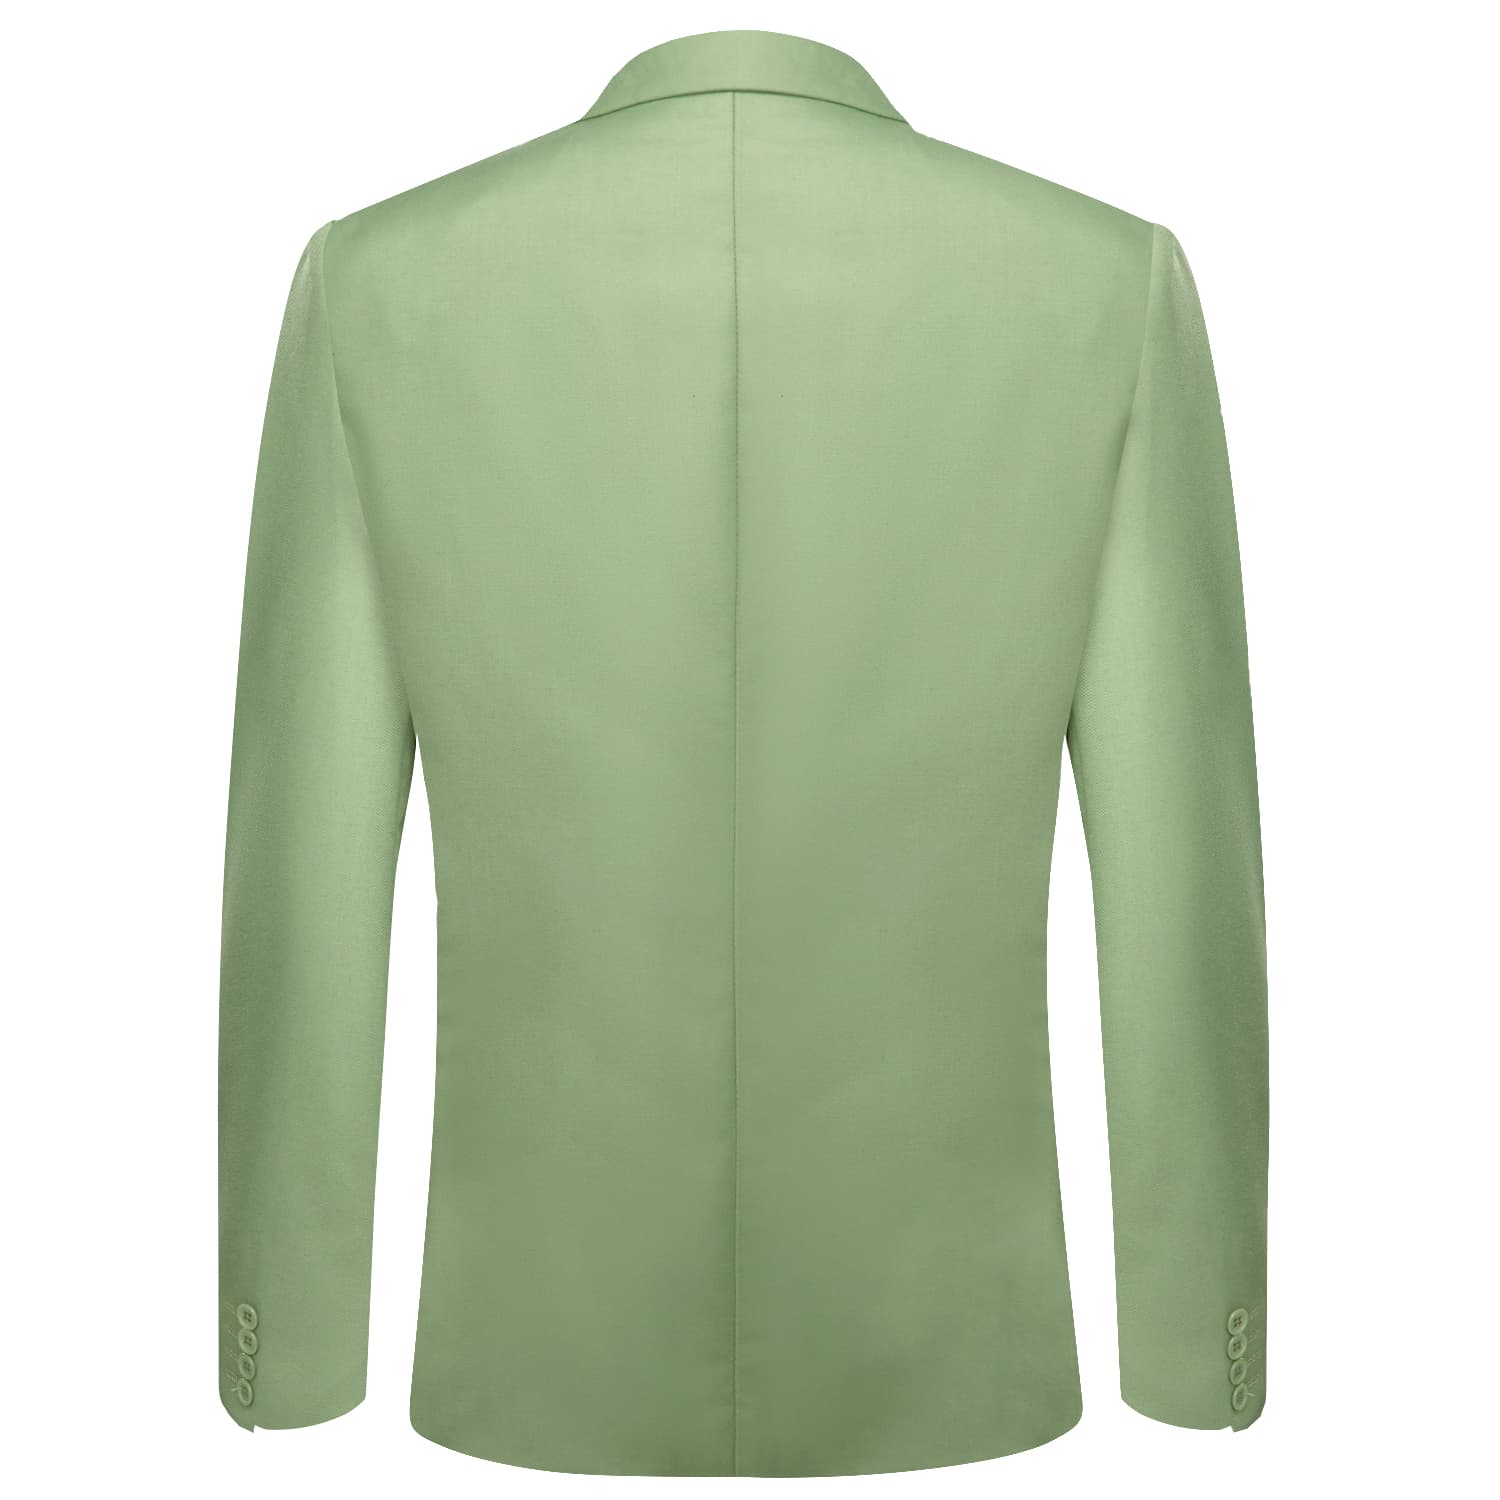  Blazer Sage Green Men's Wedding Business Solid Top Men Suit